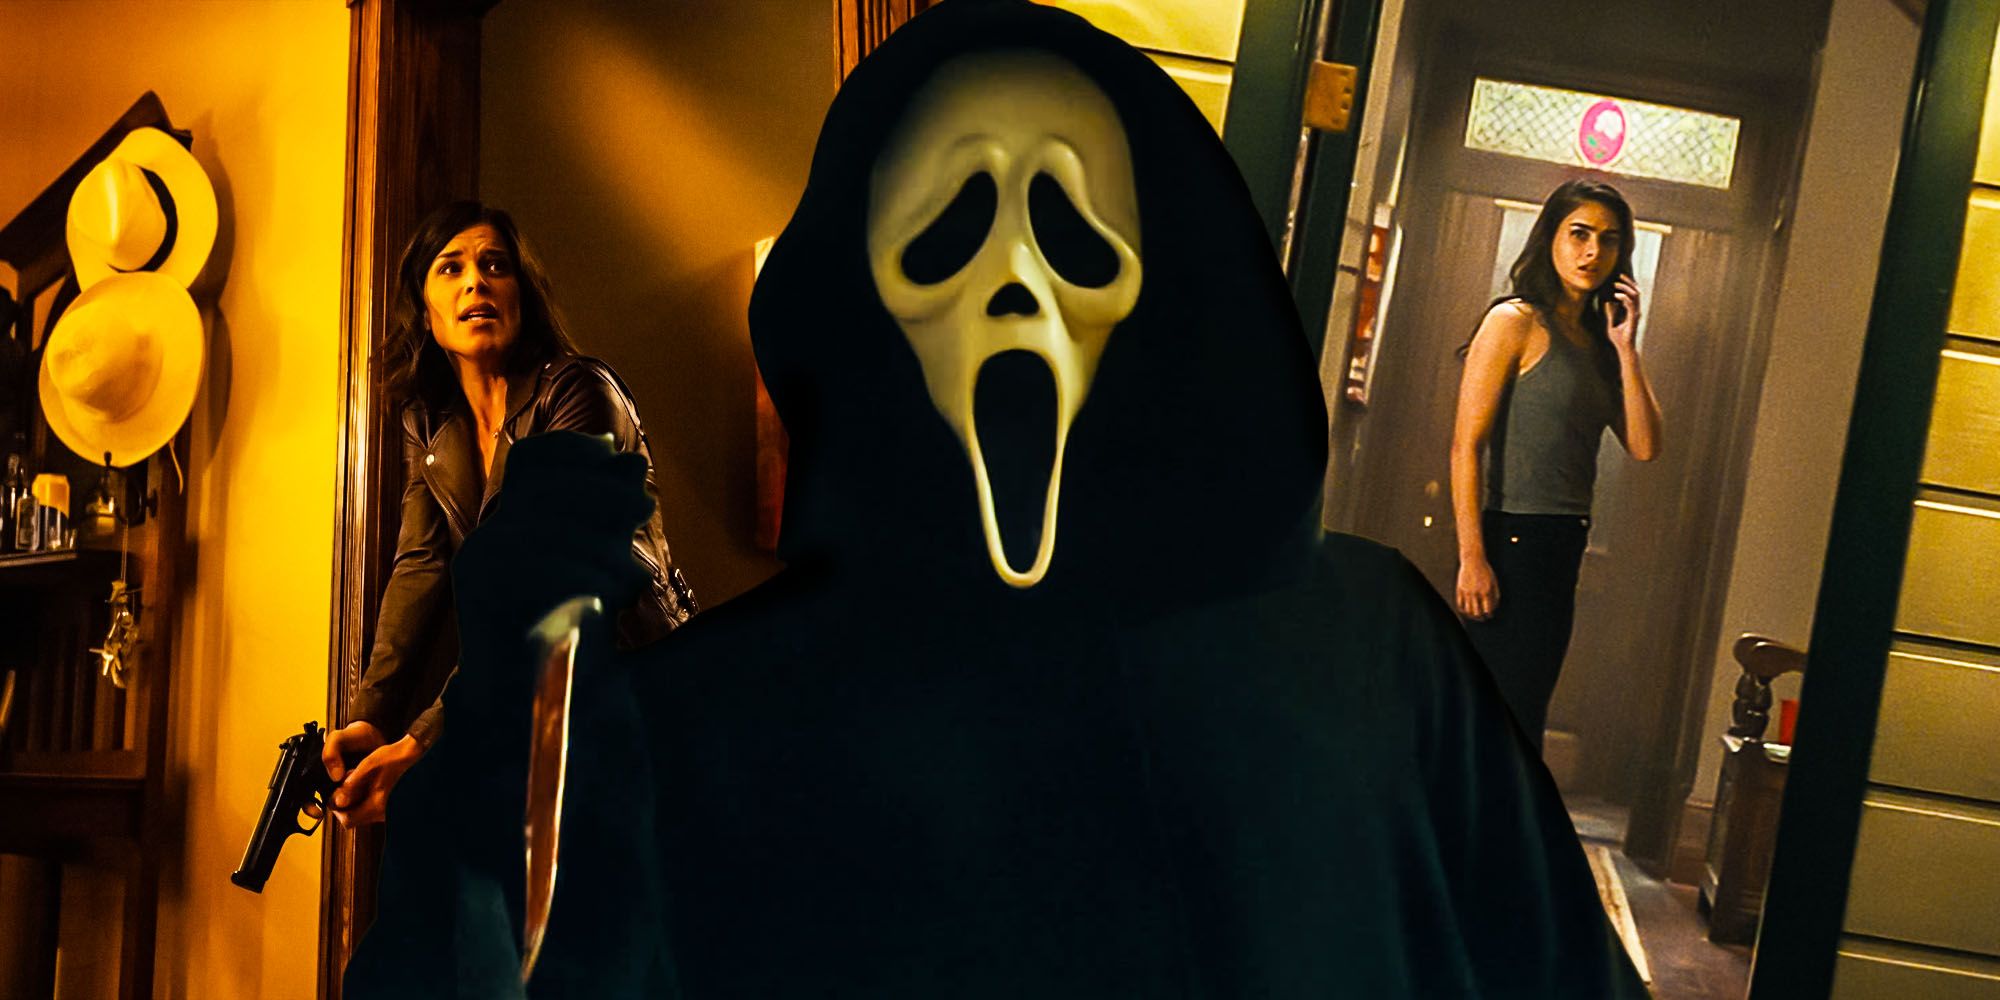 Scream Ending Ghostface Killer Identity Explained